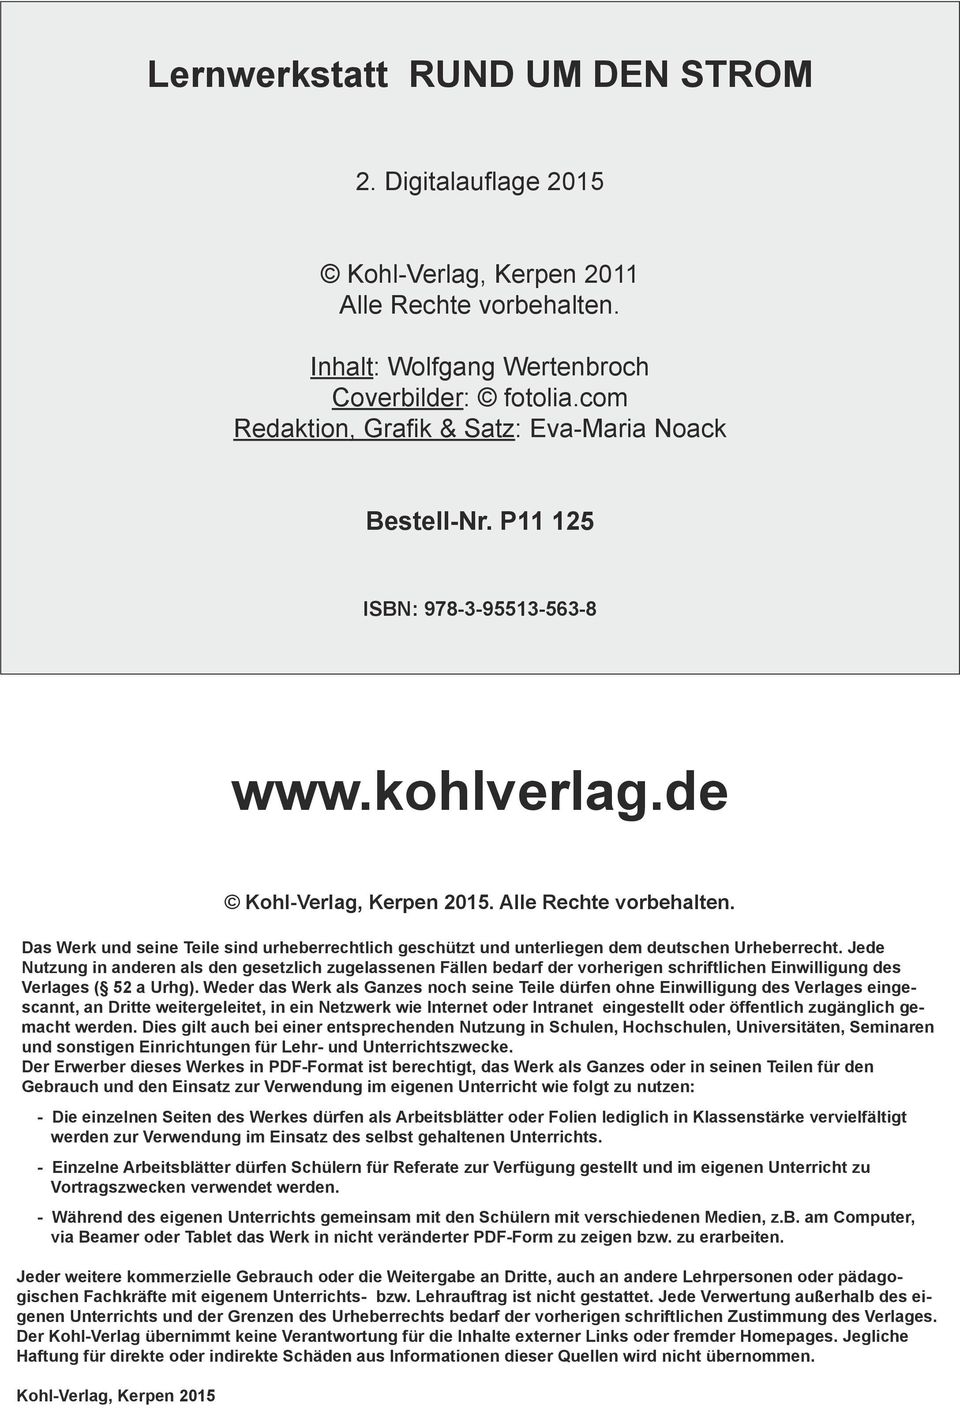 Das Werk und seine Teile sind urheberrechtlich geschützt und unterliegen dem deutschen Urheberrecht.